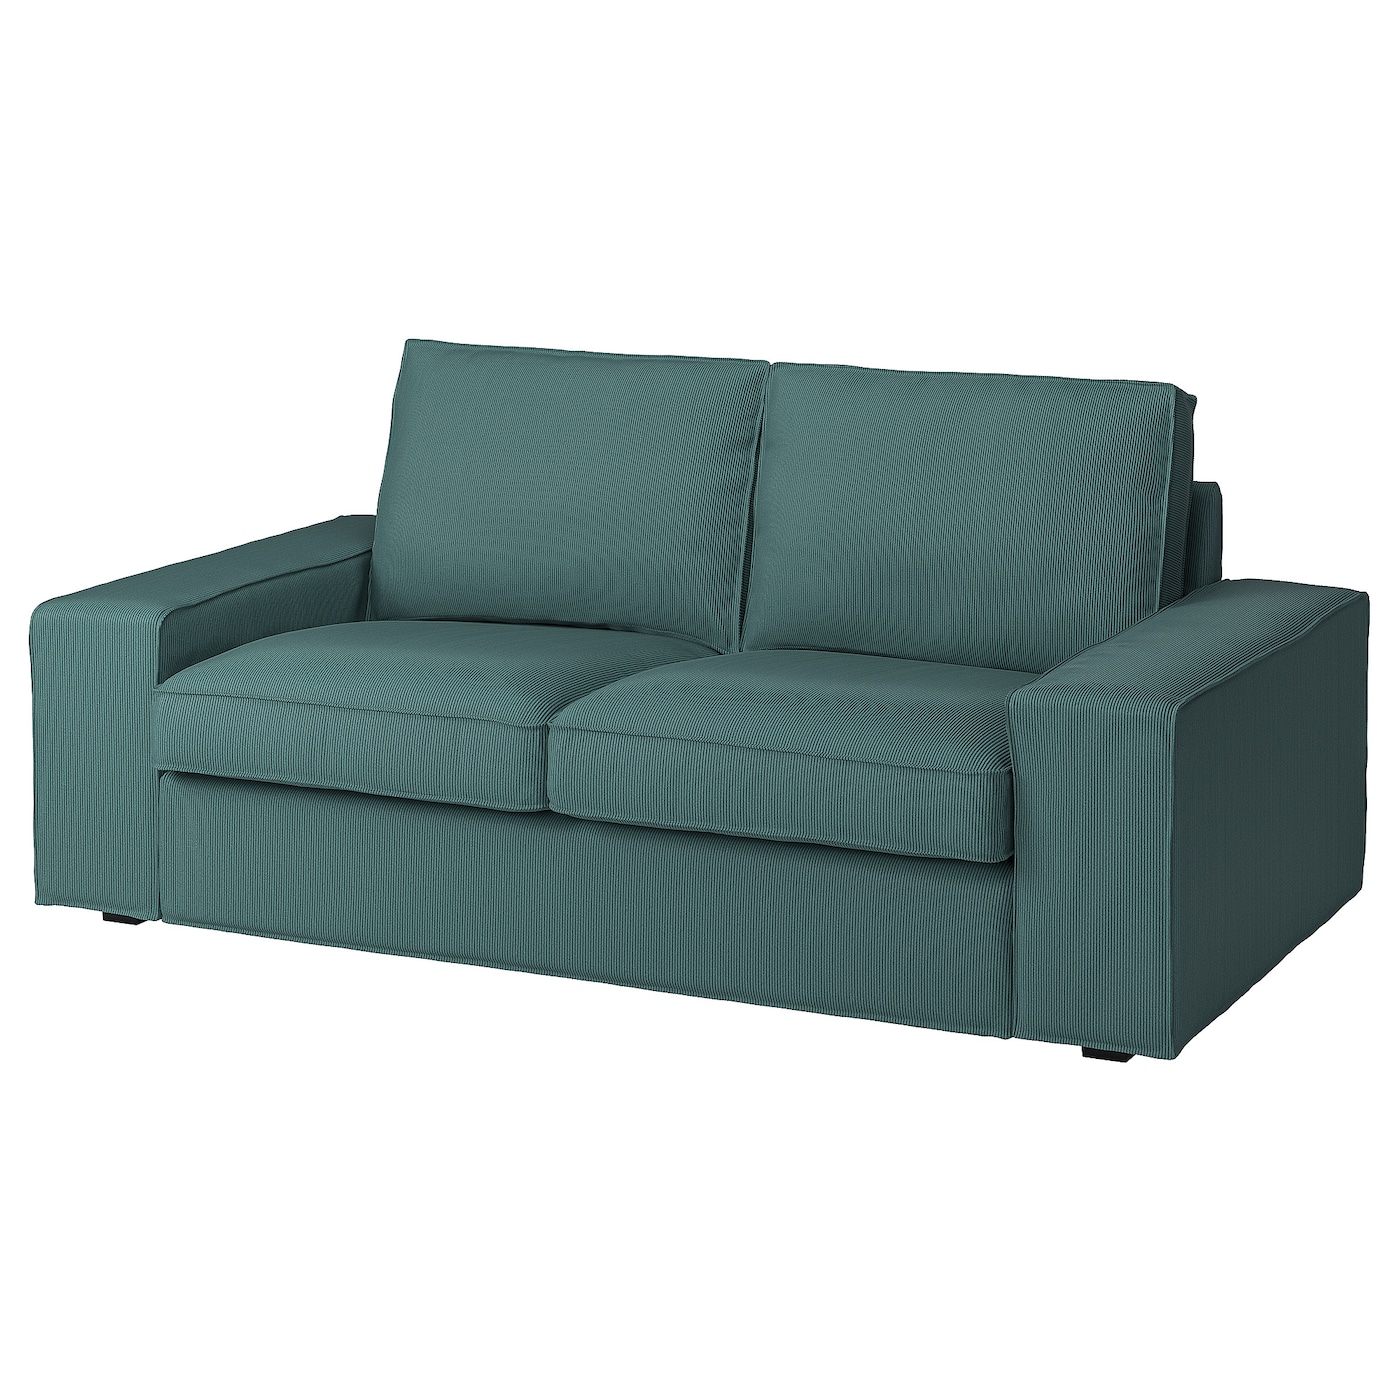 2-местный диван - IKEA KIVIK, 83x95x190см, бирюзовый, КИВИК ИКЕА